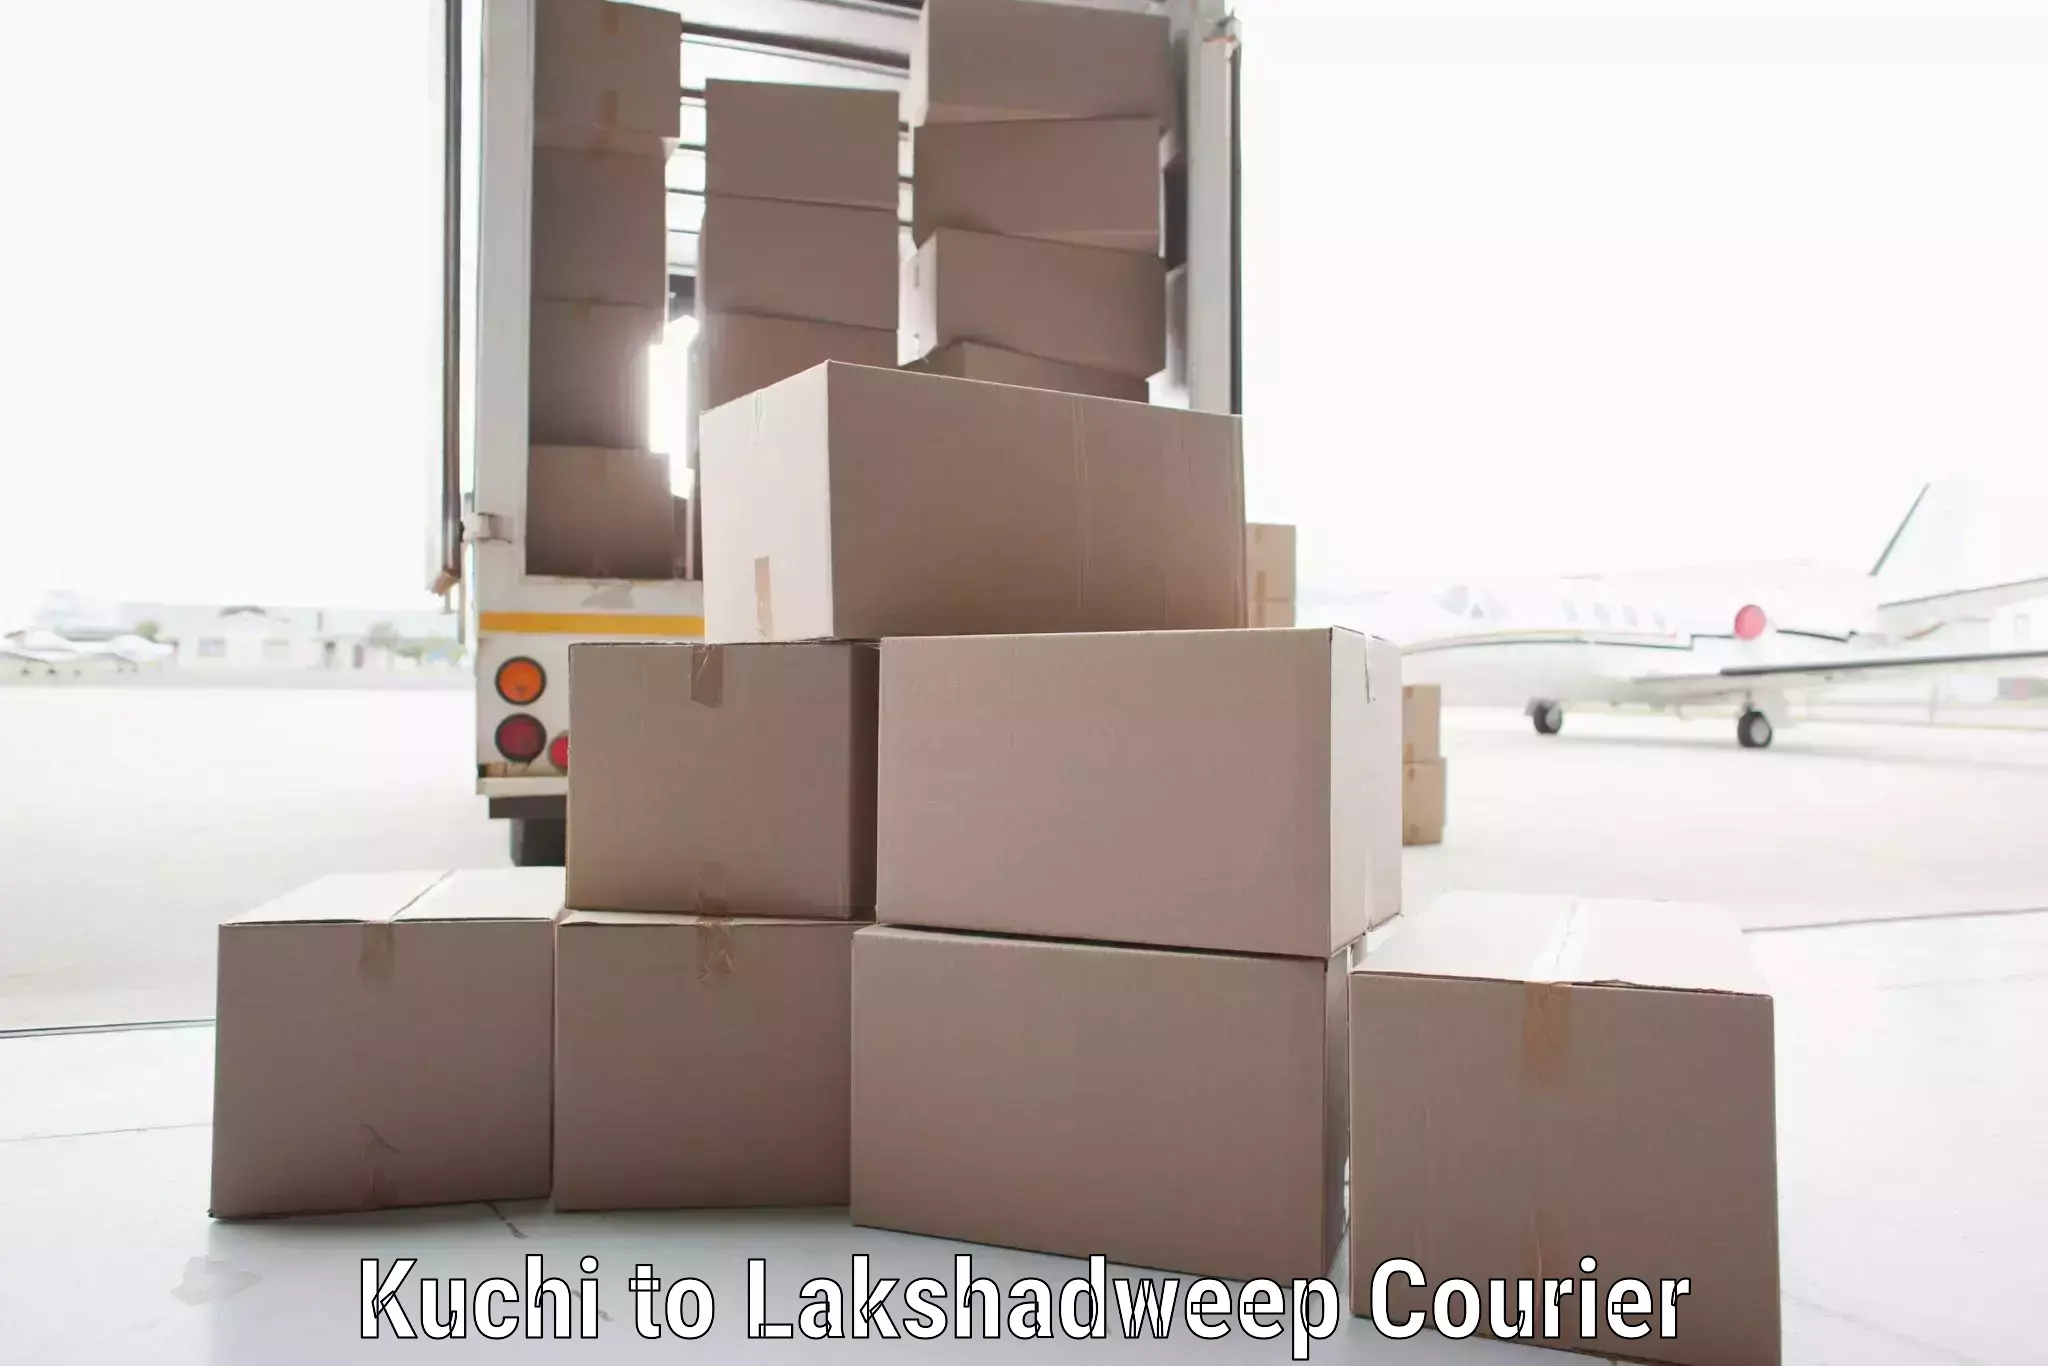 Bulk logistics Kuchi to Lakshadweep